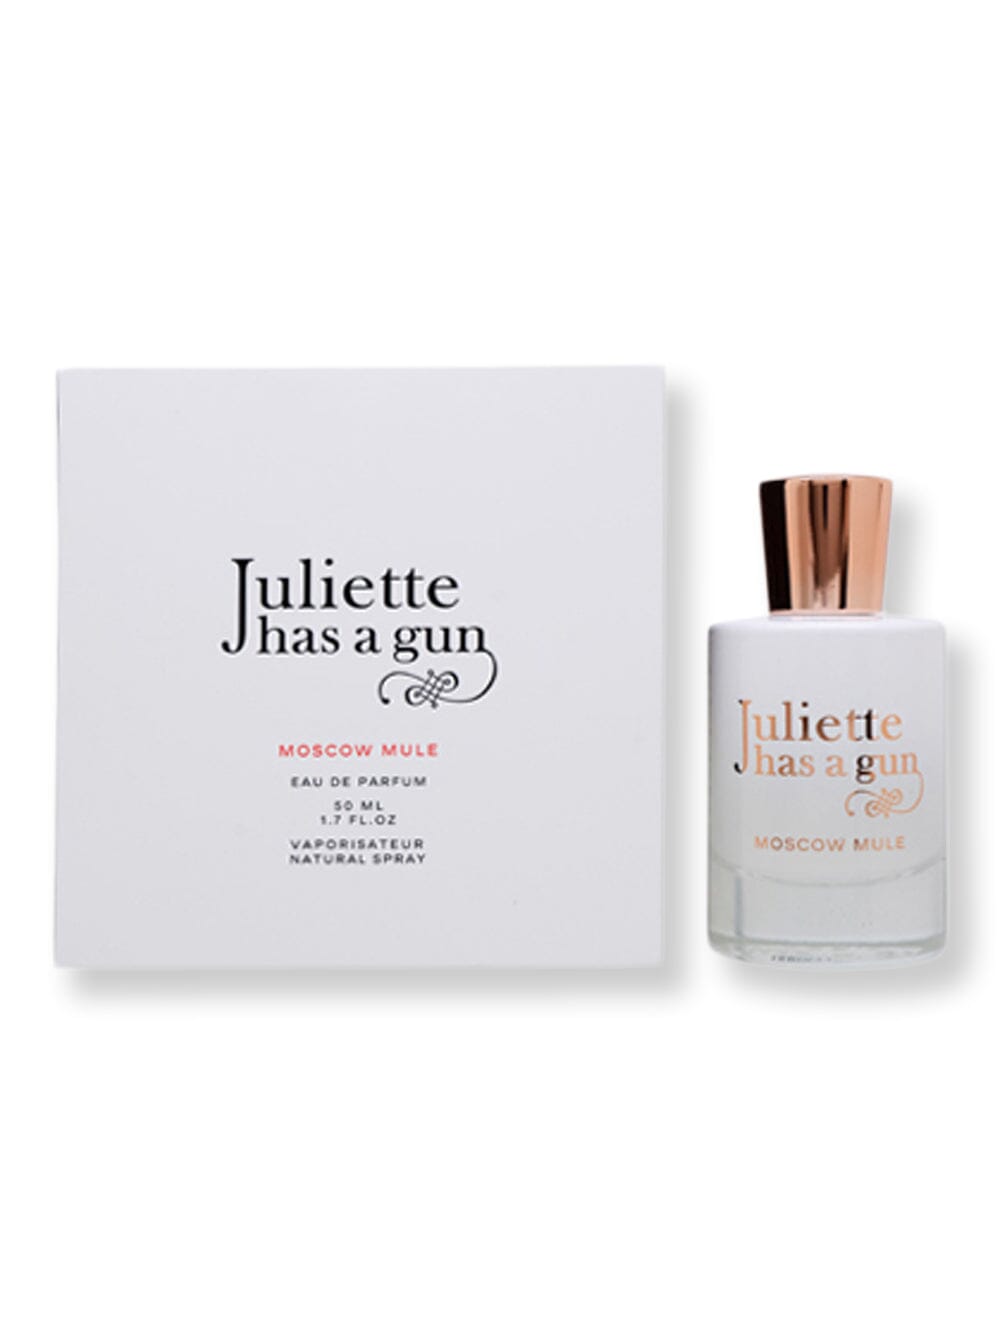 Juliette has a Gun Juliette has a Gun Moscow Mule Has A Gun EDP Spray 1.7 oz50 ml Perfume 